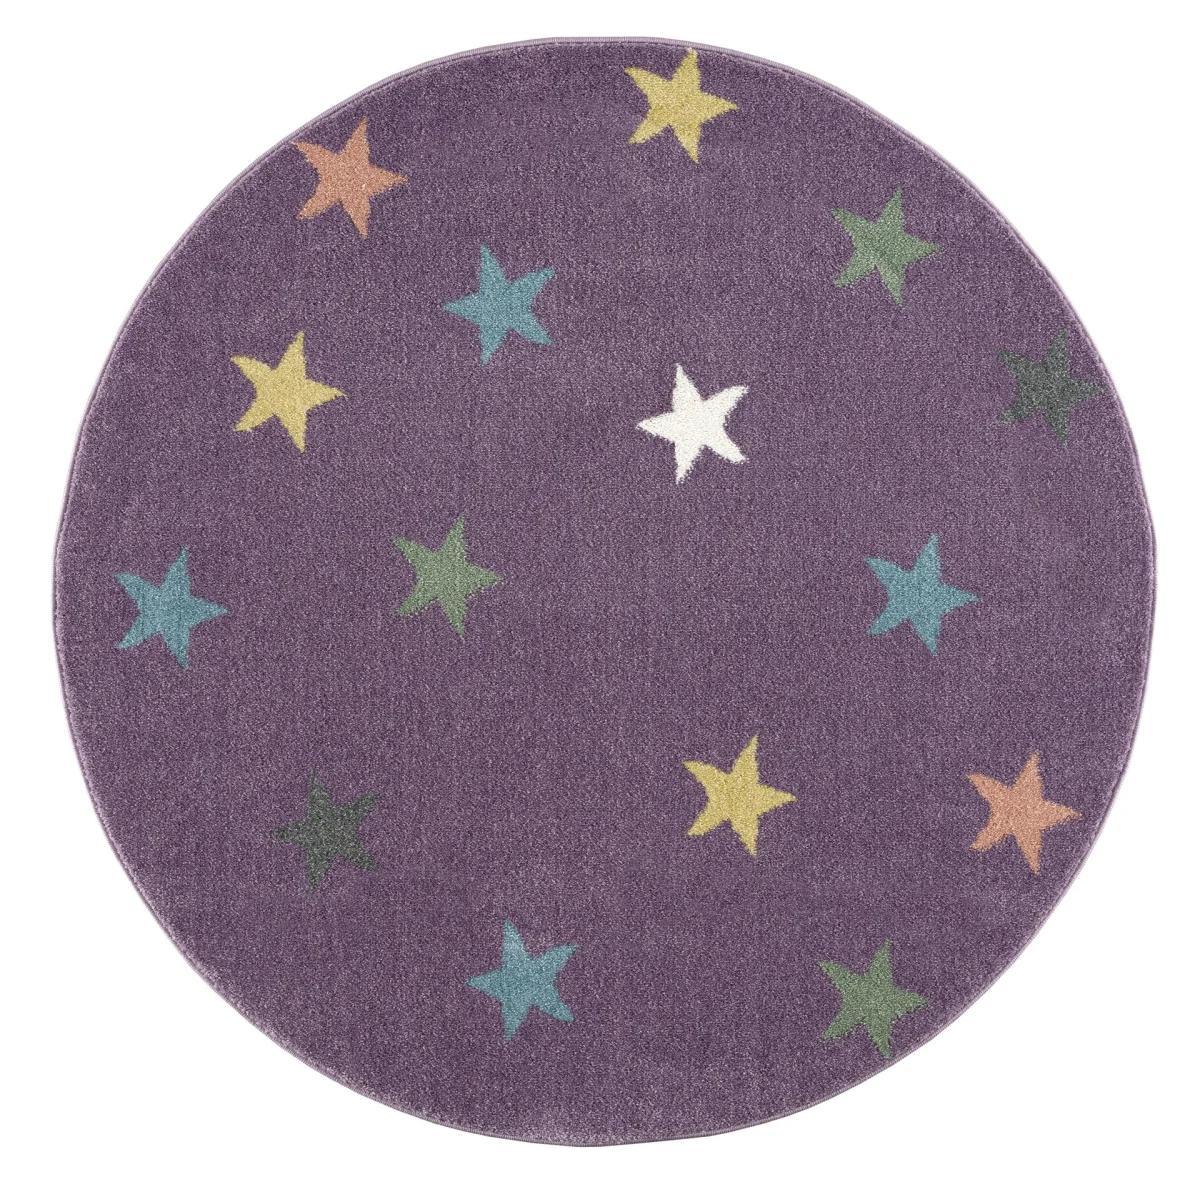 Dywan dziecięcy okrągły Violet Stars Round 160 cm do pokoju dziecięcego fioletowy w gwiazdki nr. 3